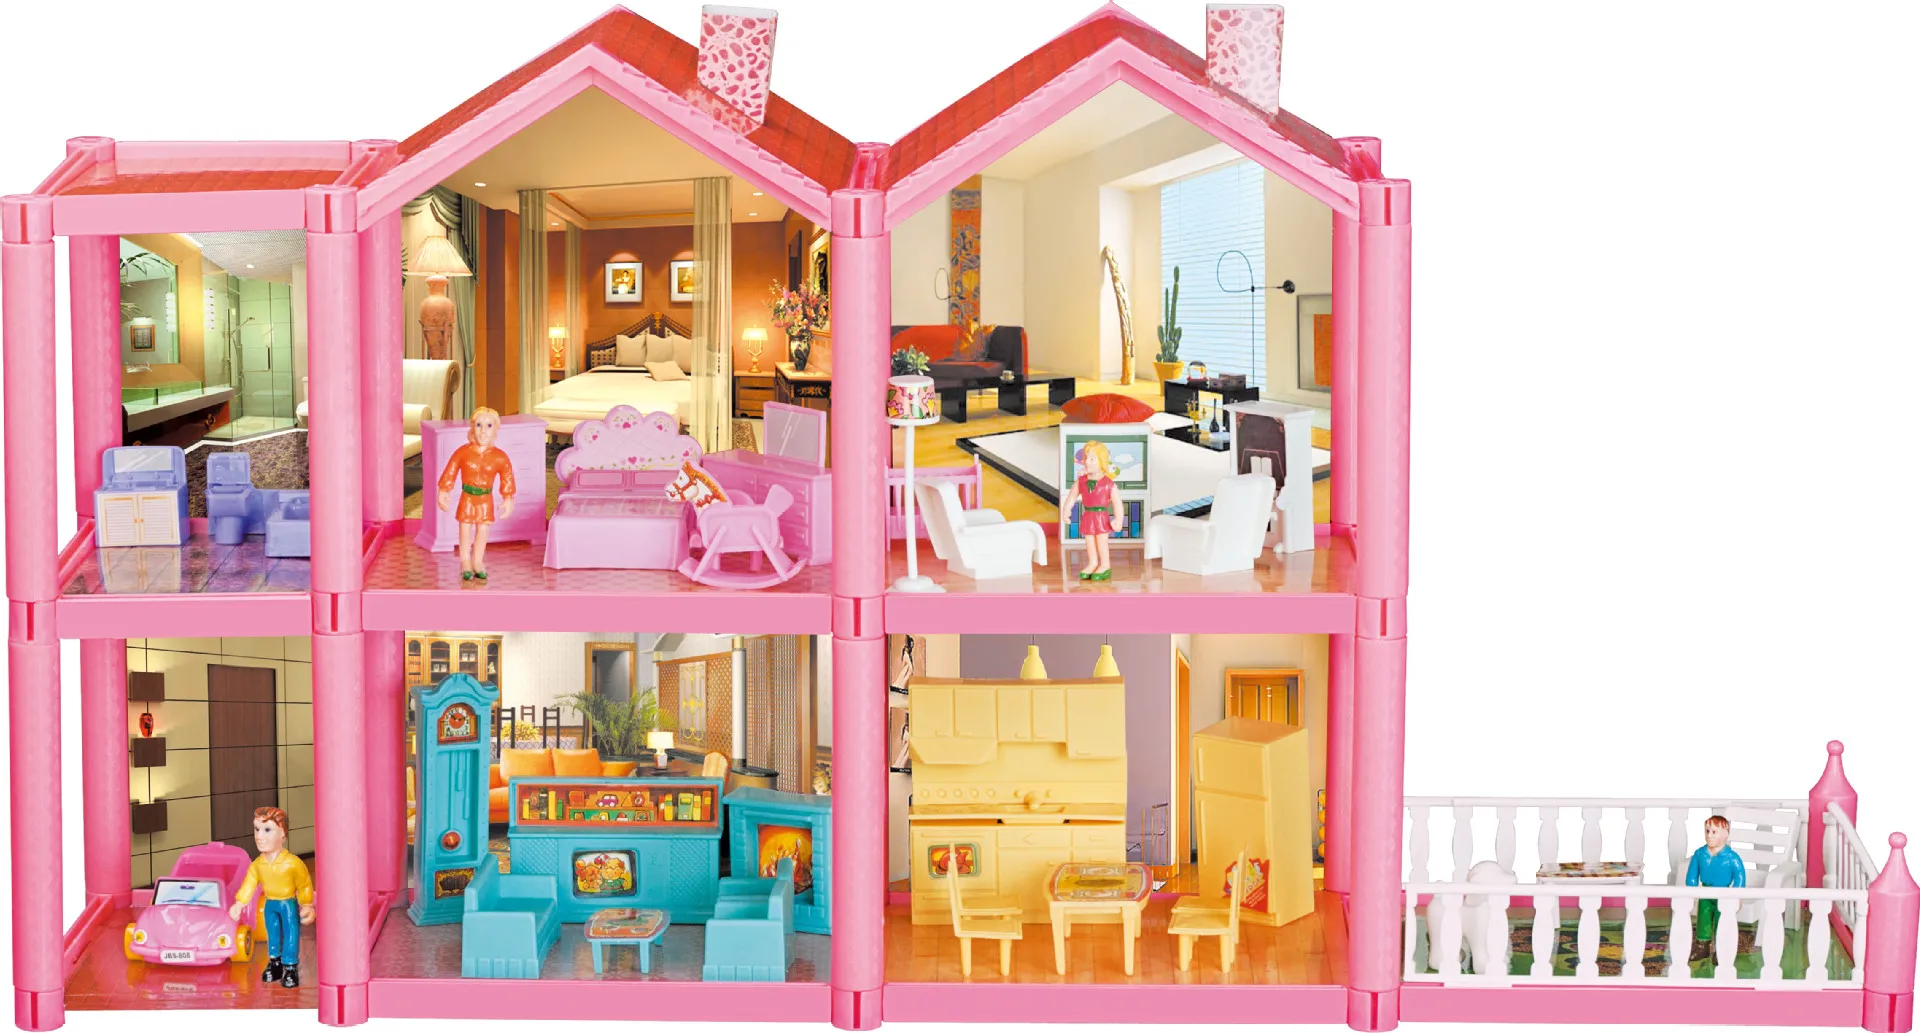 Taobao горячая Распродажа, Детский развивающий игровой дом, вилла, набор для детей раннего возраста, собранная игрушка для девочек, Прямая с фабрики